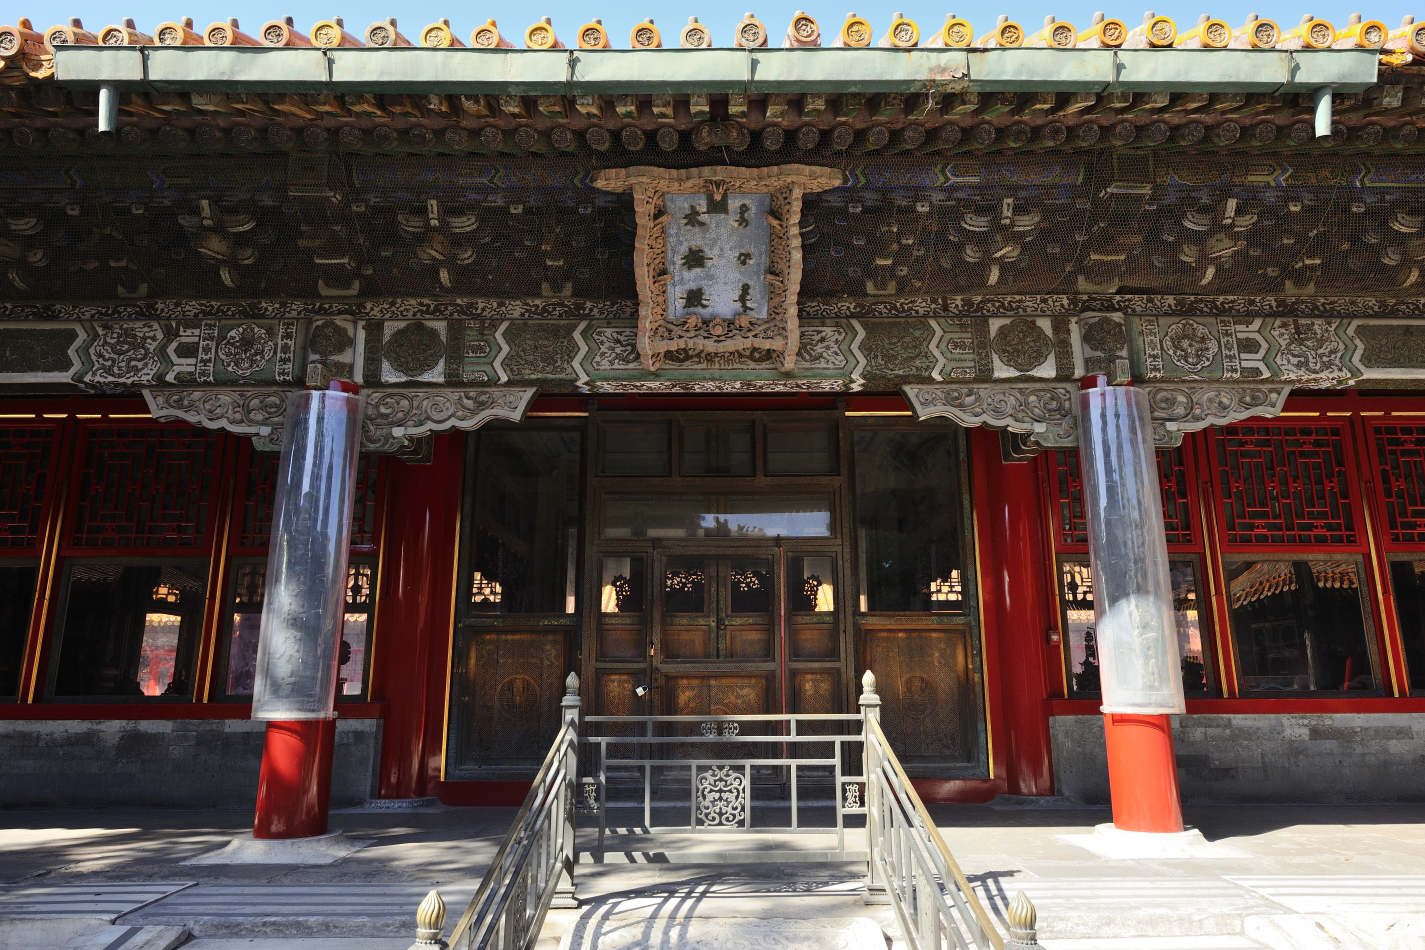 【北京游记】故宫外朝之前三殿——太和殿、中和殿、保和殿 - 知乎